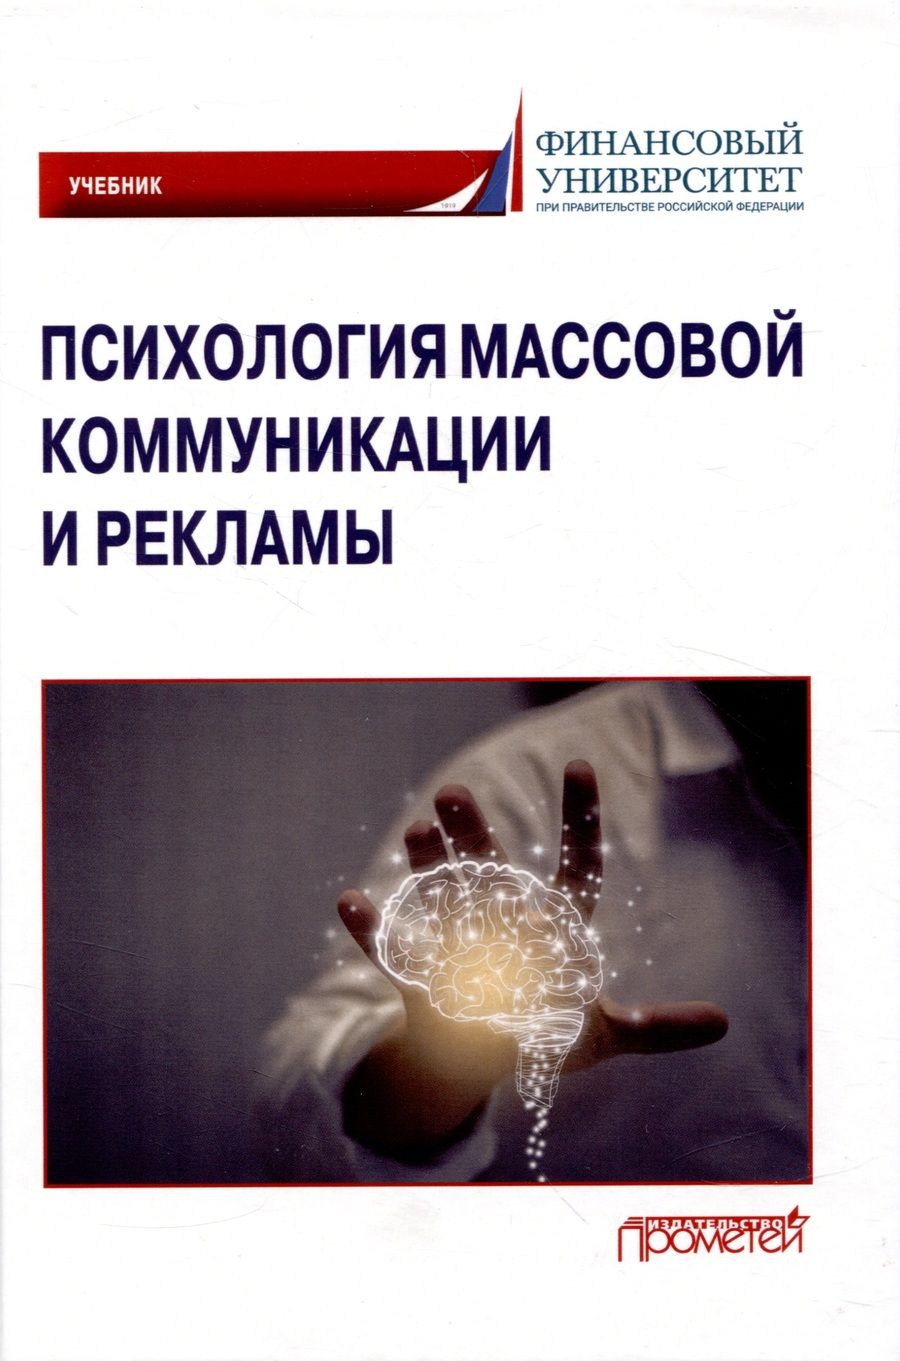 Обложка книги "Маркина, Молчанов, Поскребышева: Психология массовой коммуникации и рекламы. Учебник для бакалавриата"